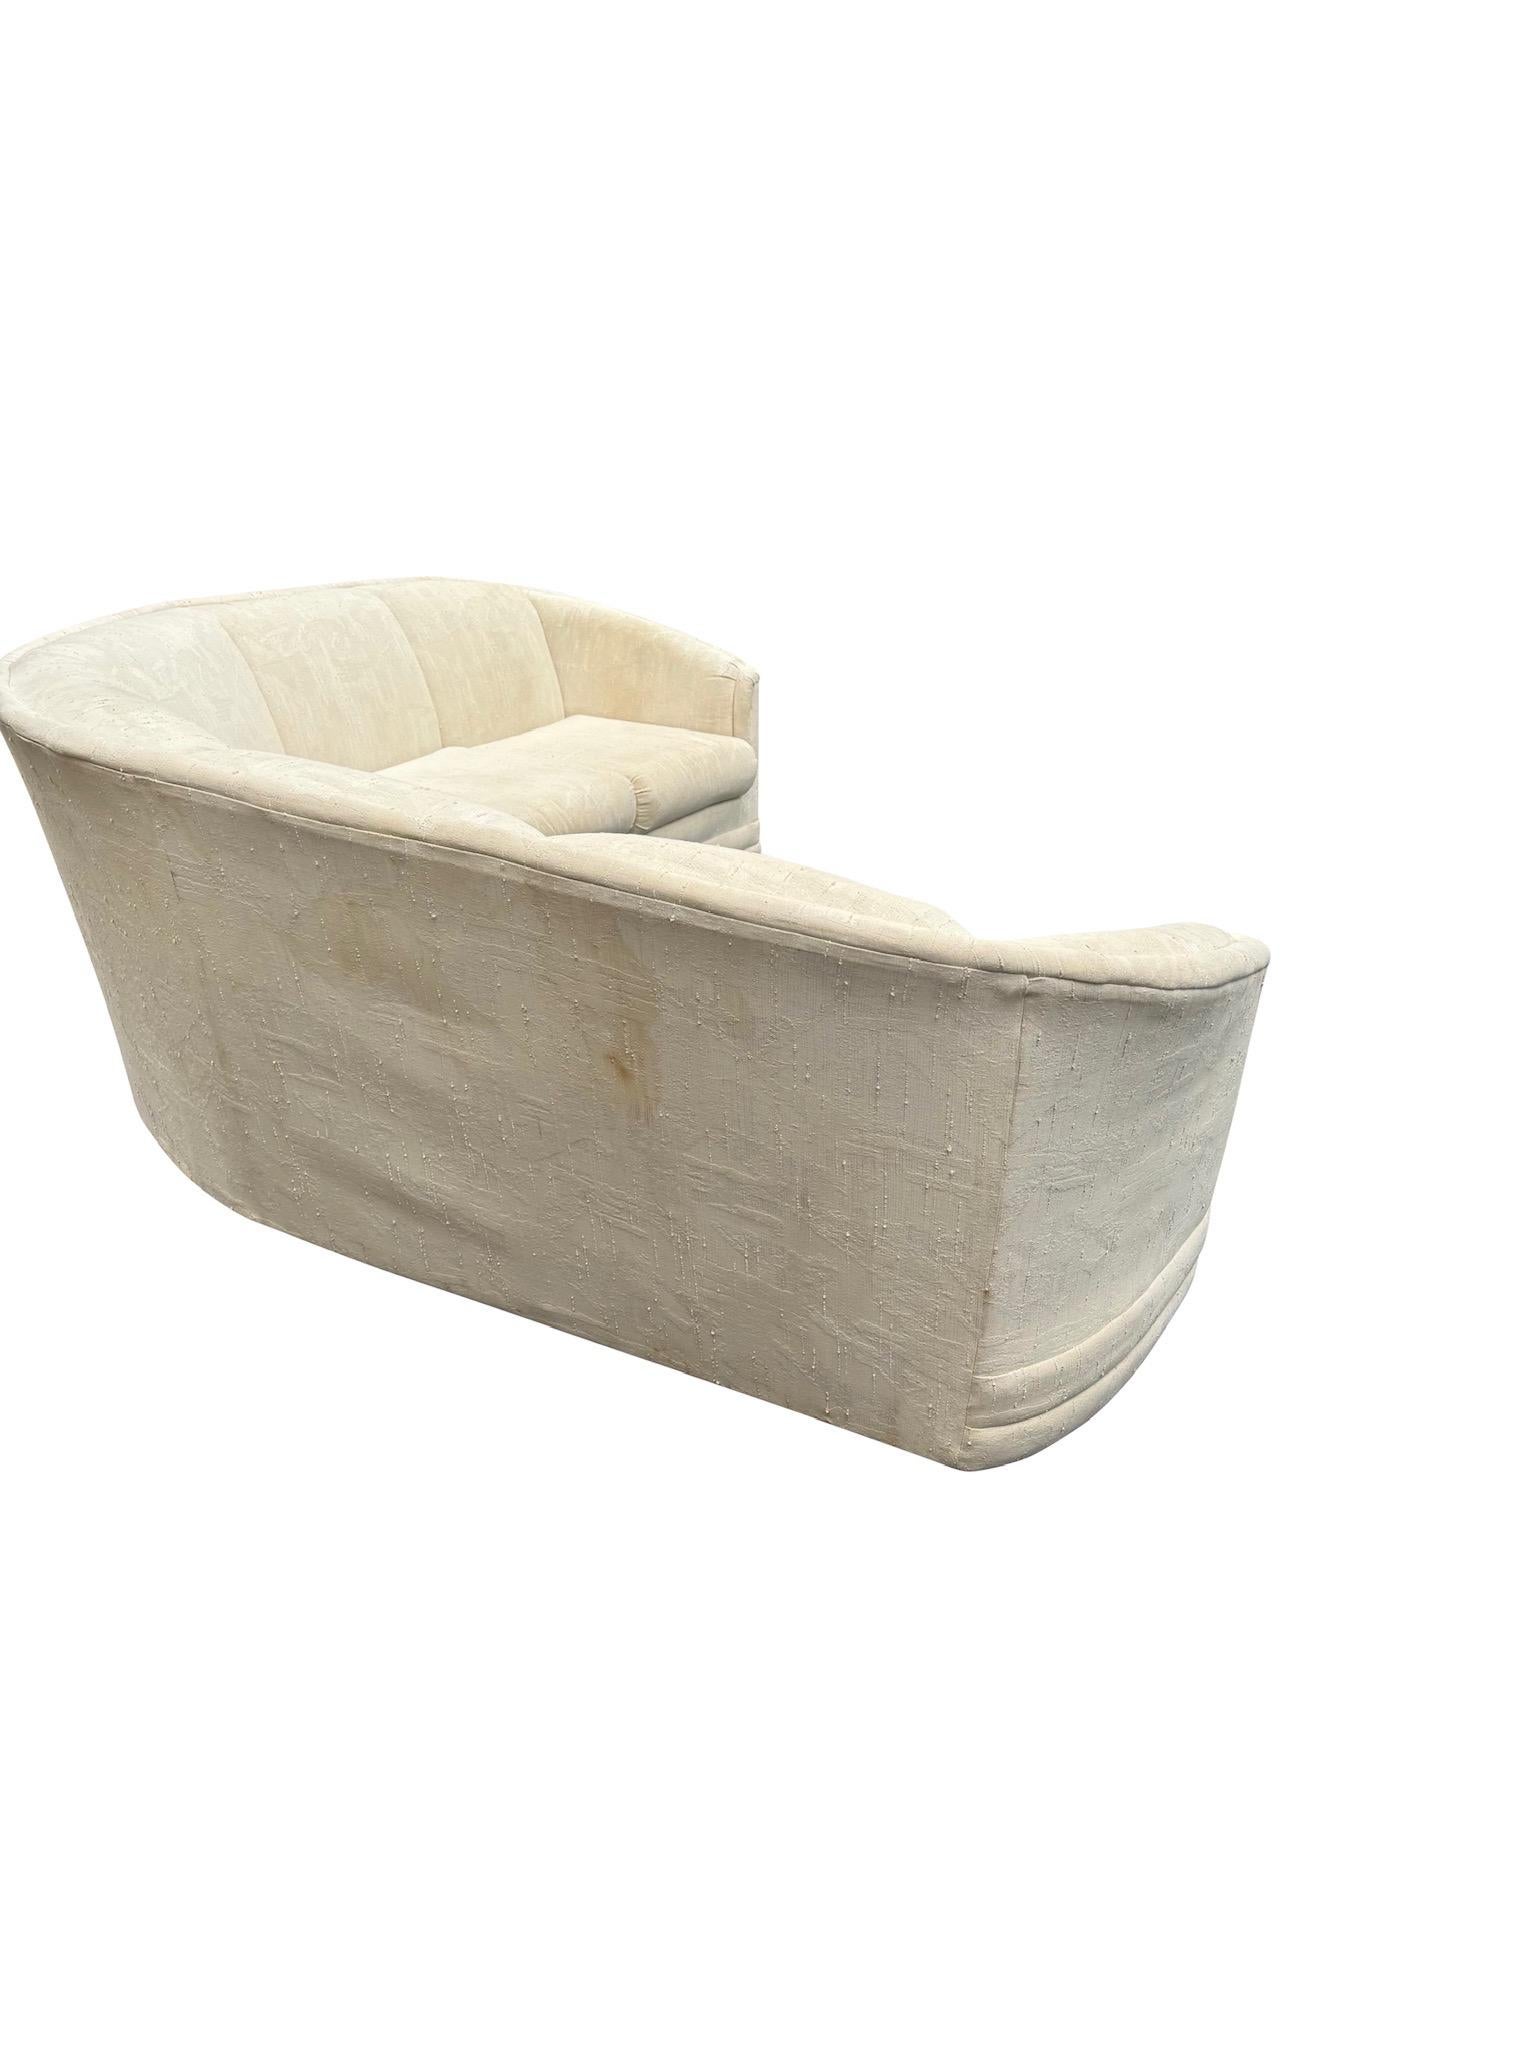 Découvrez le canapé sectionnel sculpté postmoderne, doté d'un design unique qui se divise en deux pour un arrangement polyvalent et un confort moelleux, parfait pour les espaces de vie modernes.